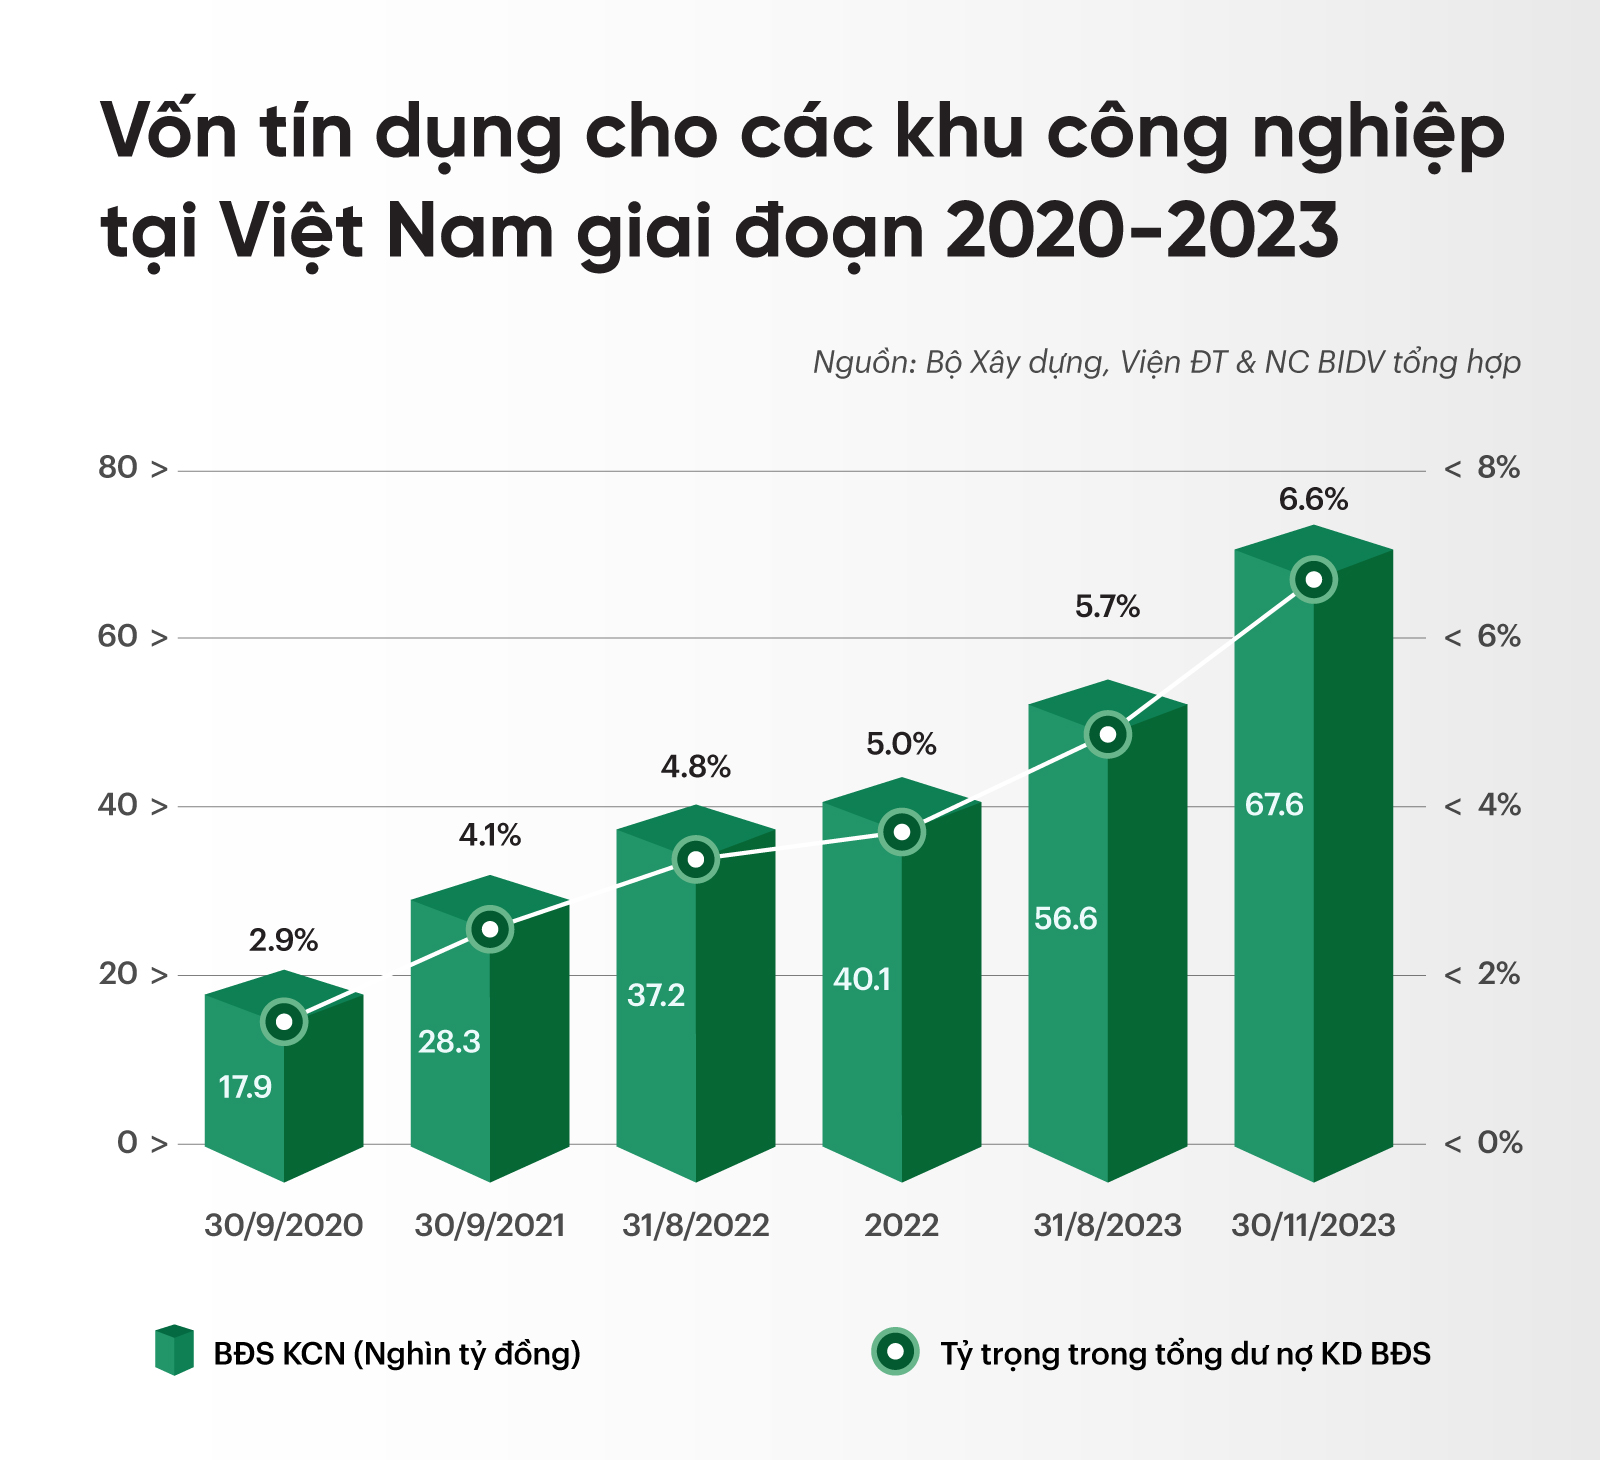 Vốn tín dụng cho các khu công nghiệp tại Việt Nam trong giai đoạn 2020-2023